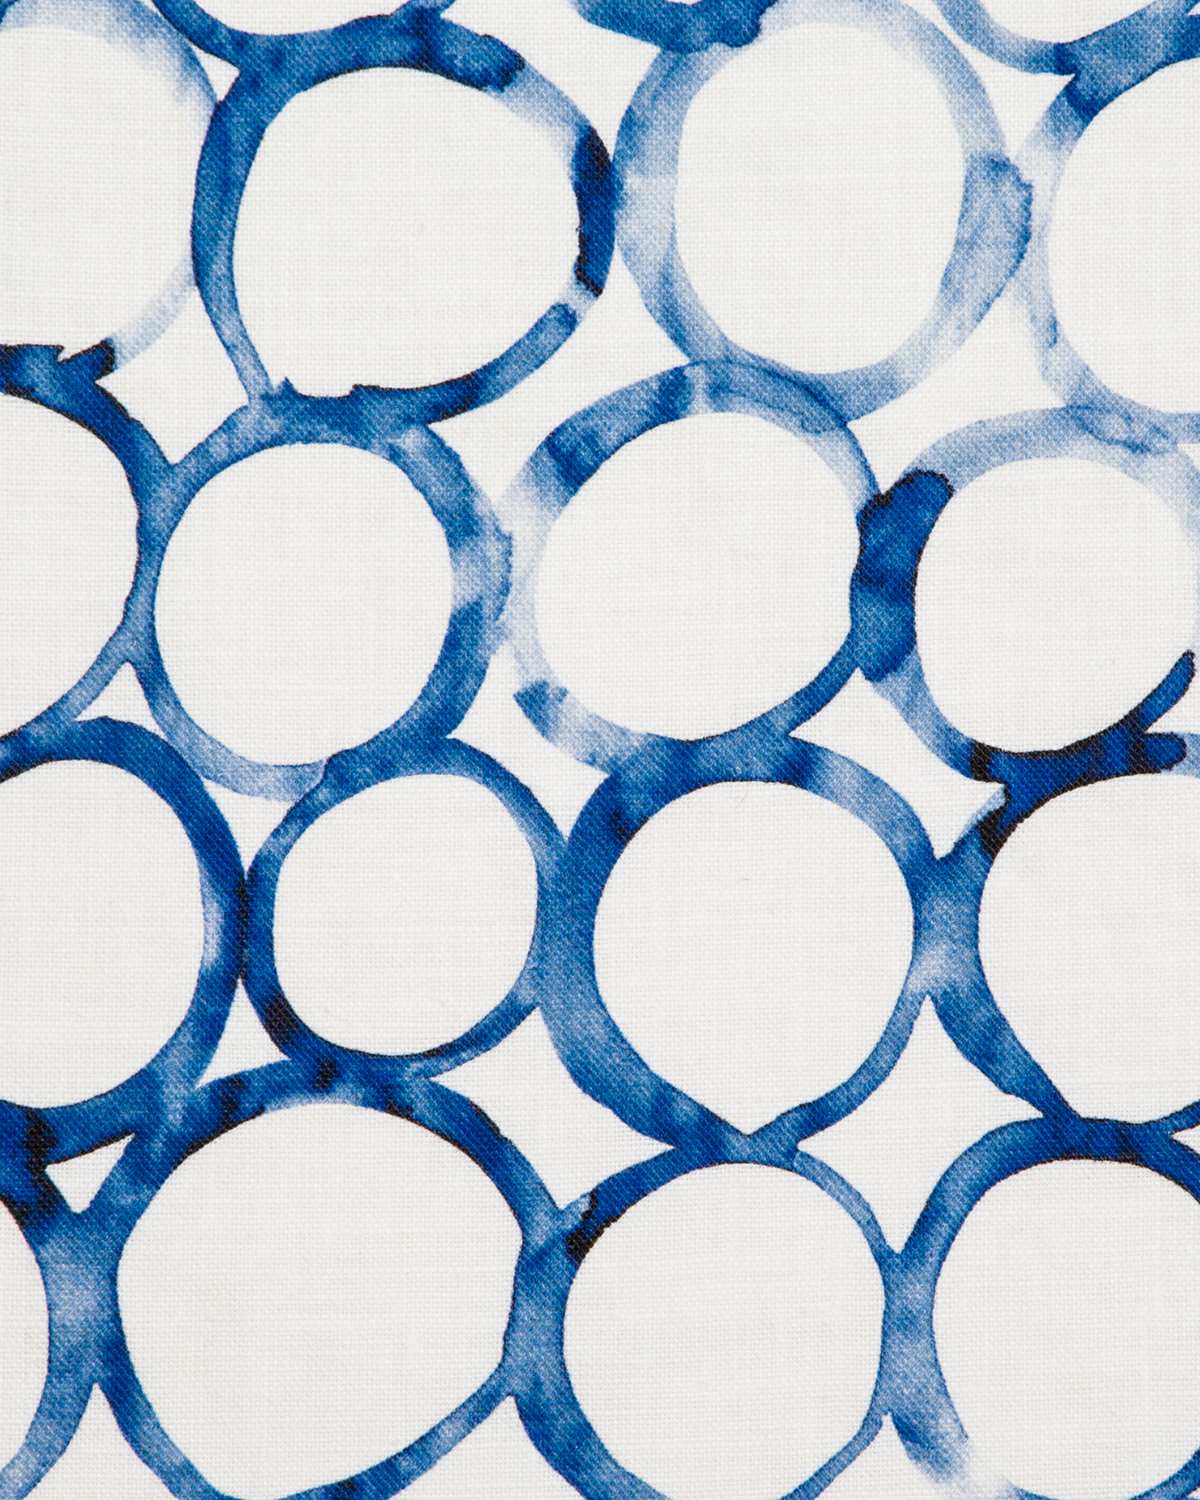 Interlocking Circles Fabric in Cobalt